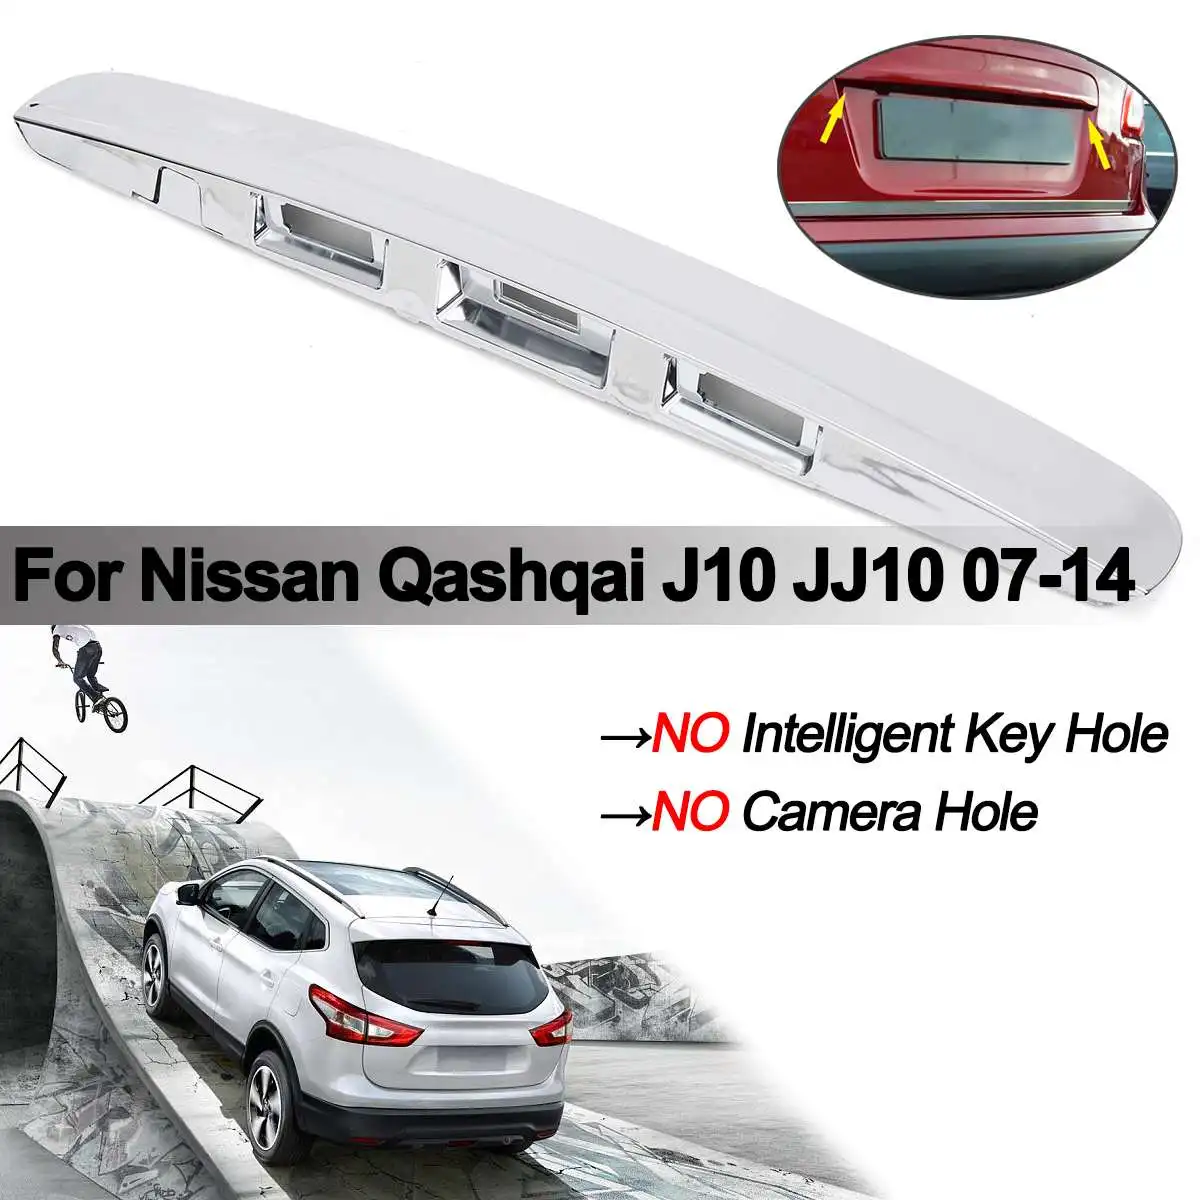 Серебряная крышка багажника Ручка крышки без I-key и отверстие для камеры для Nissan Qashqai J10 JJ10 07-14 пластиковая накладка